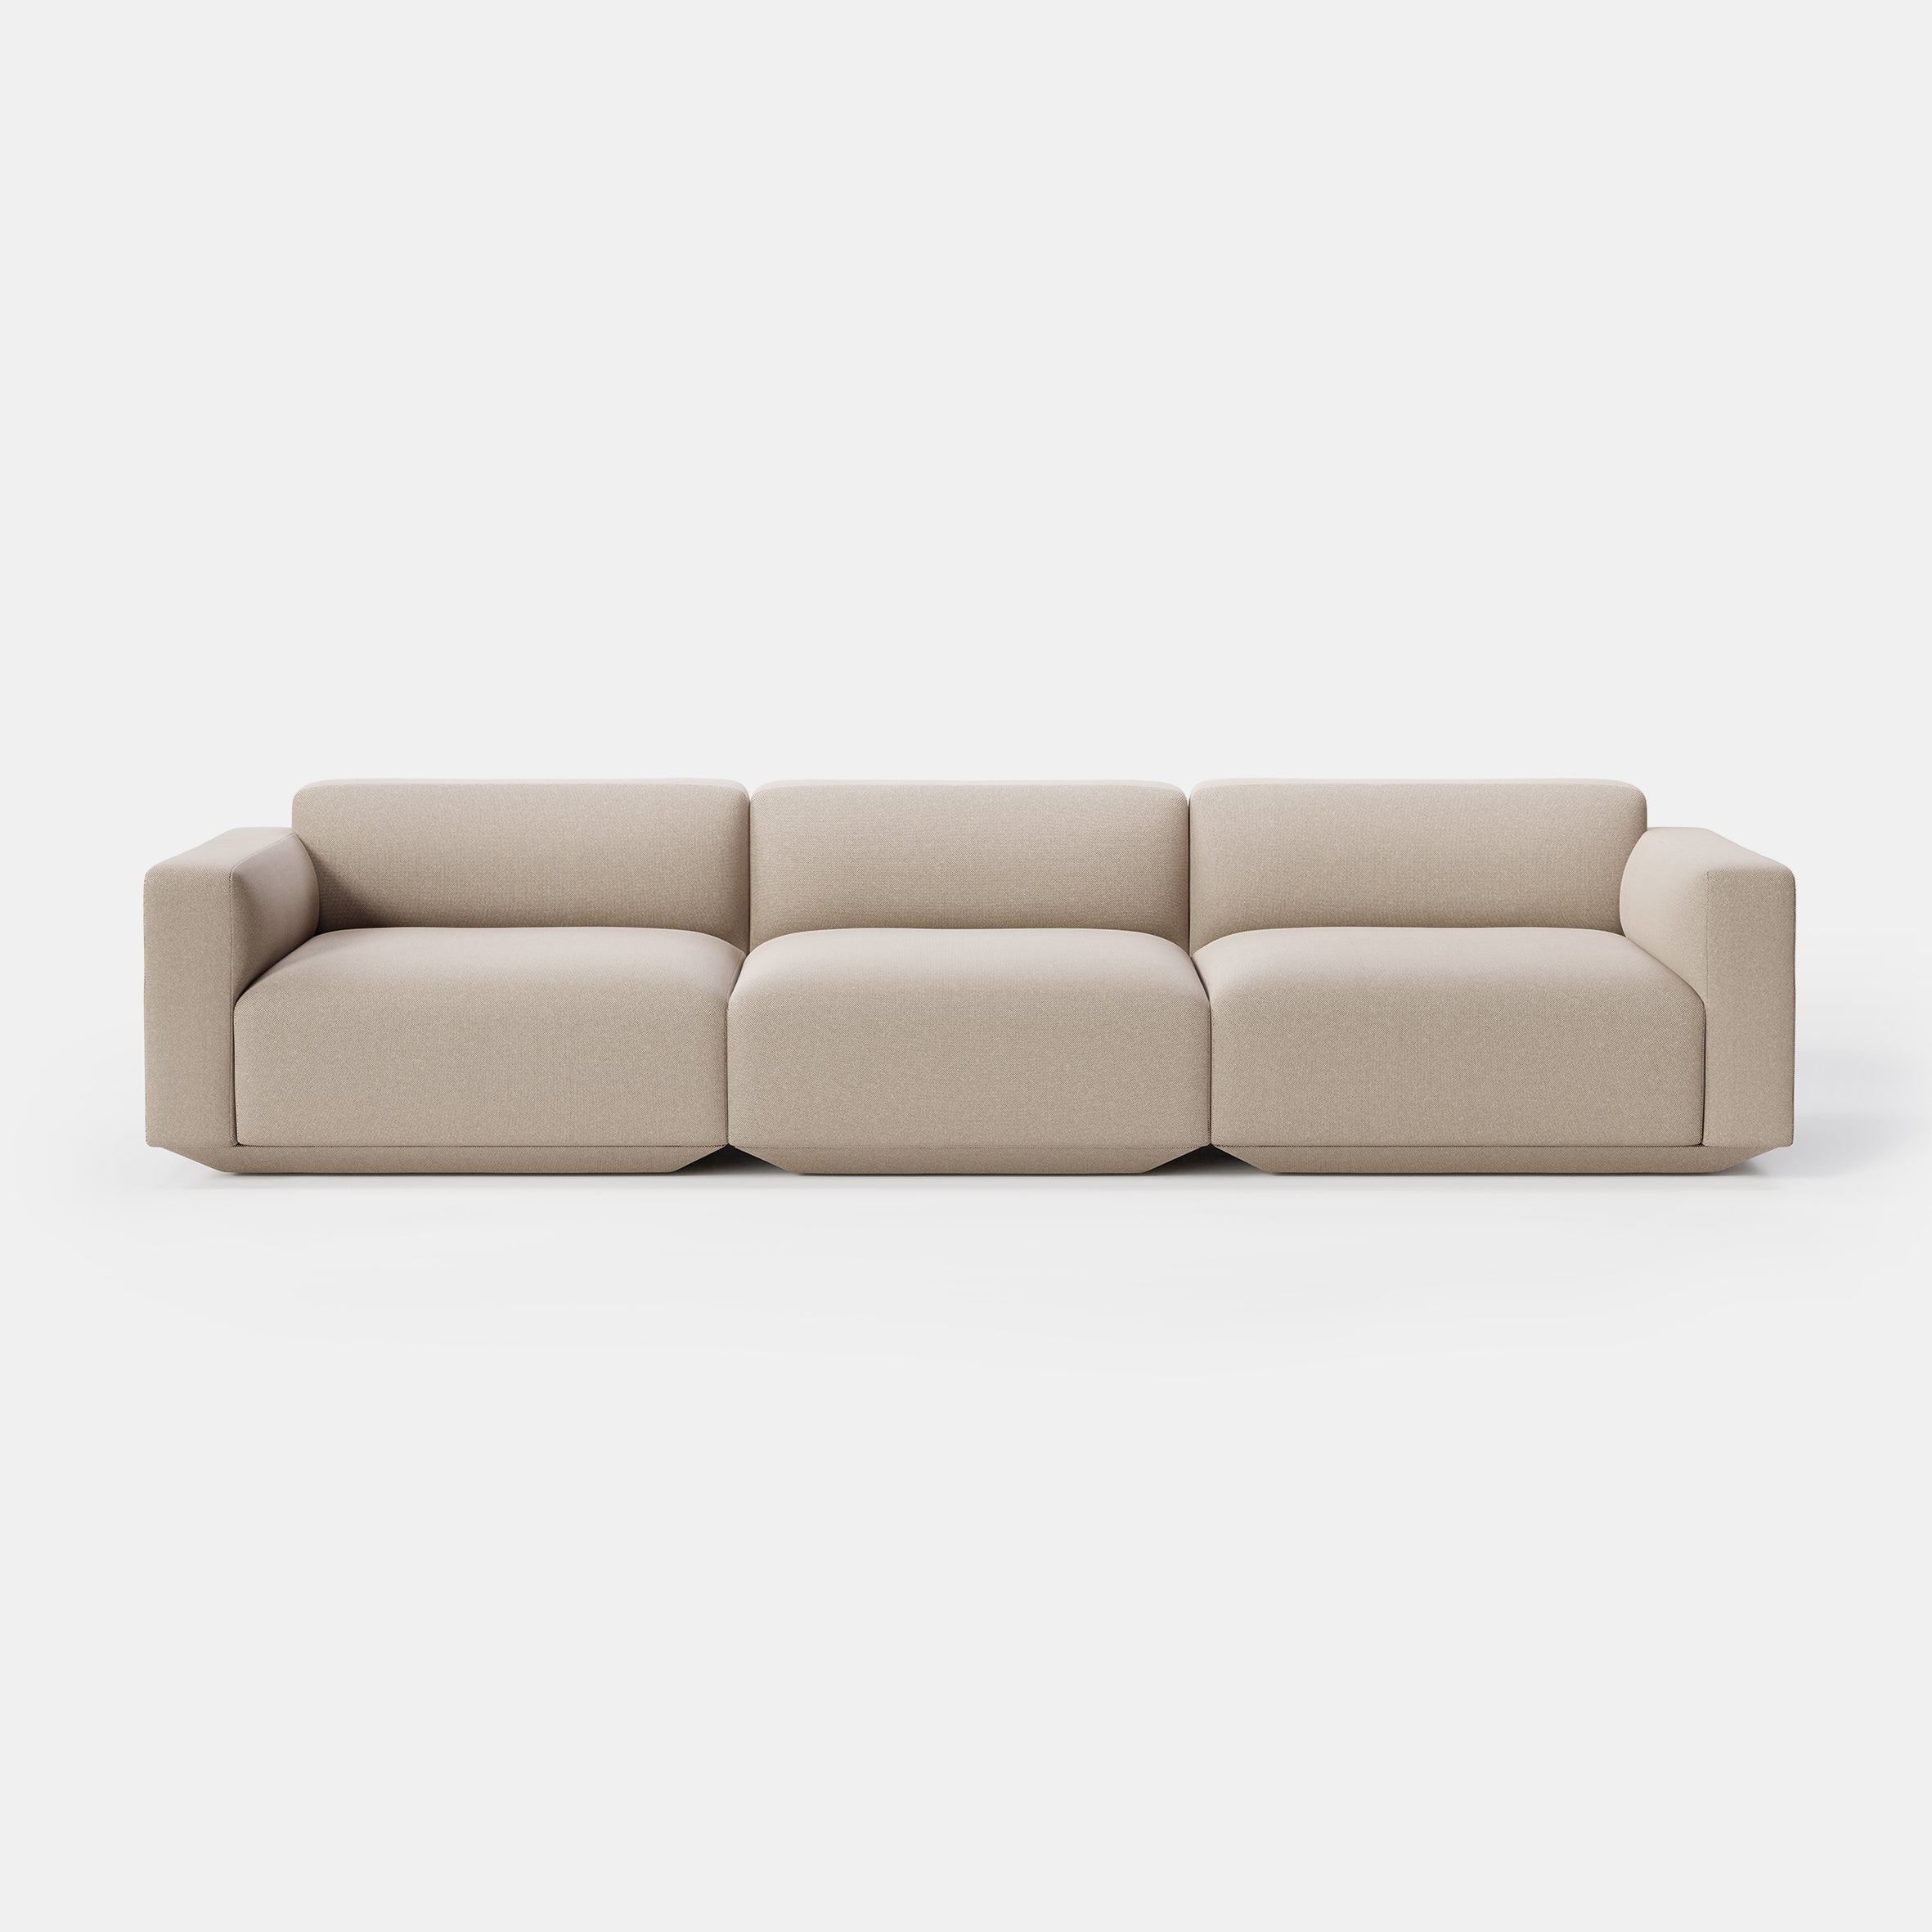 Develius Modular Sofa - 3 Seater